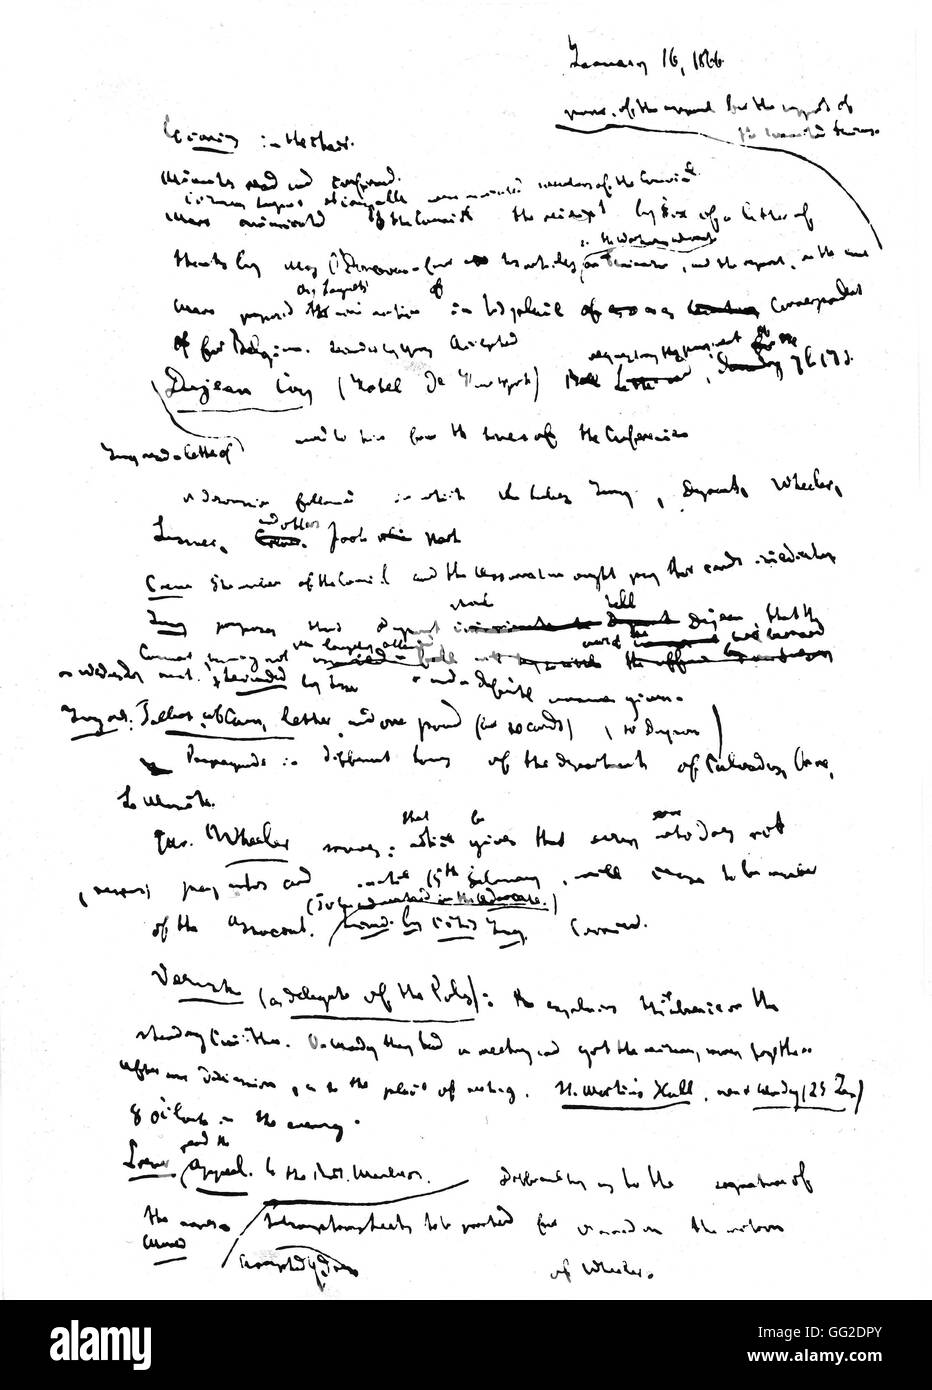 Manuscrit rédigé par Marx detailling les protocoles du Conseil Général 16 janvier 1866 Angleterre Banque D'Images